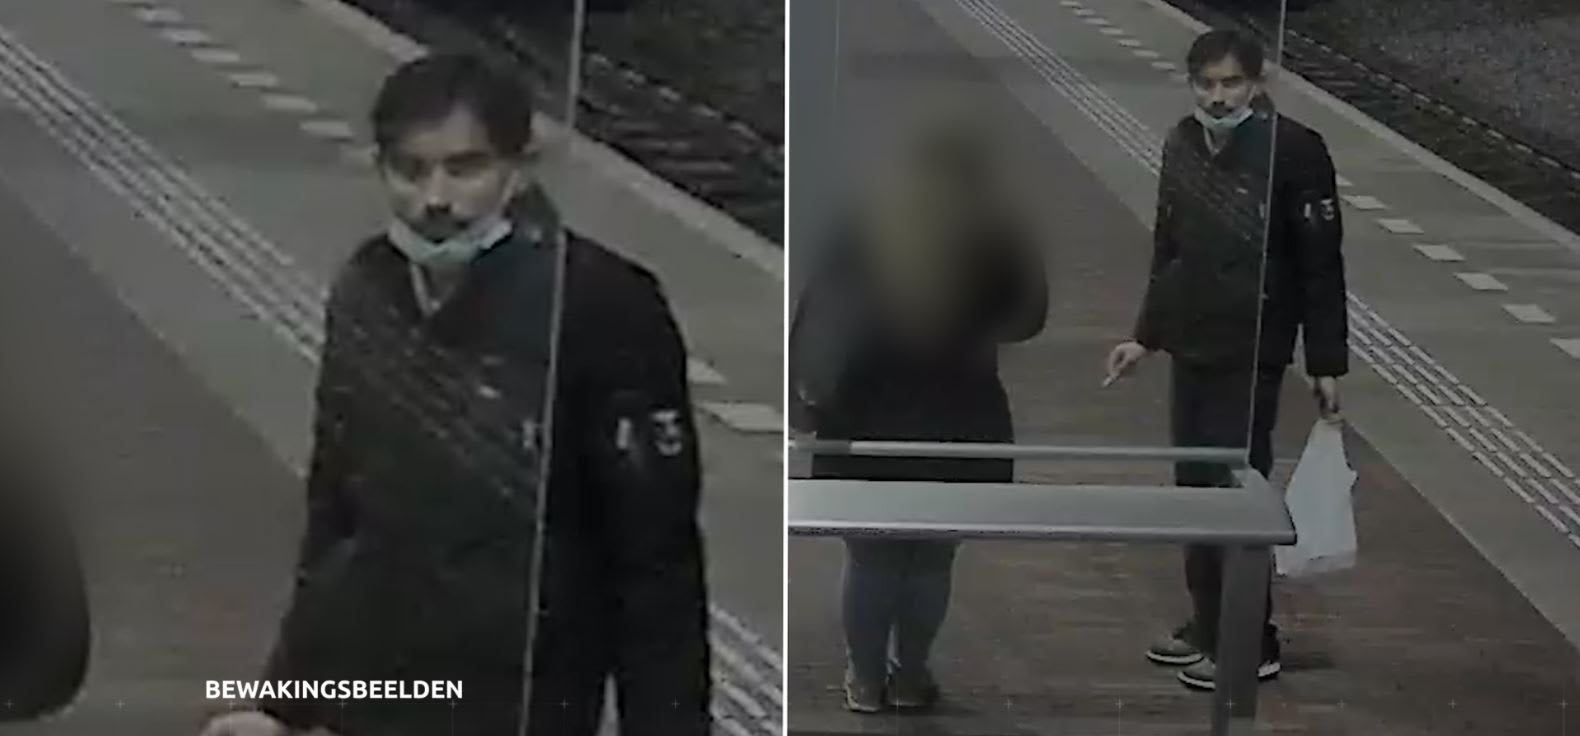 Deze man randde een vrouw aan in de trein, politie wil weten wie hij is